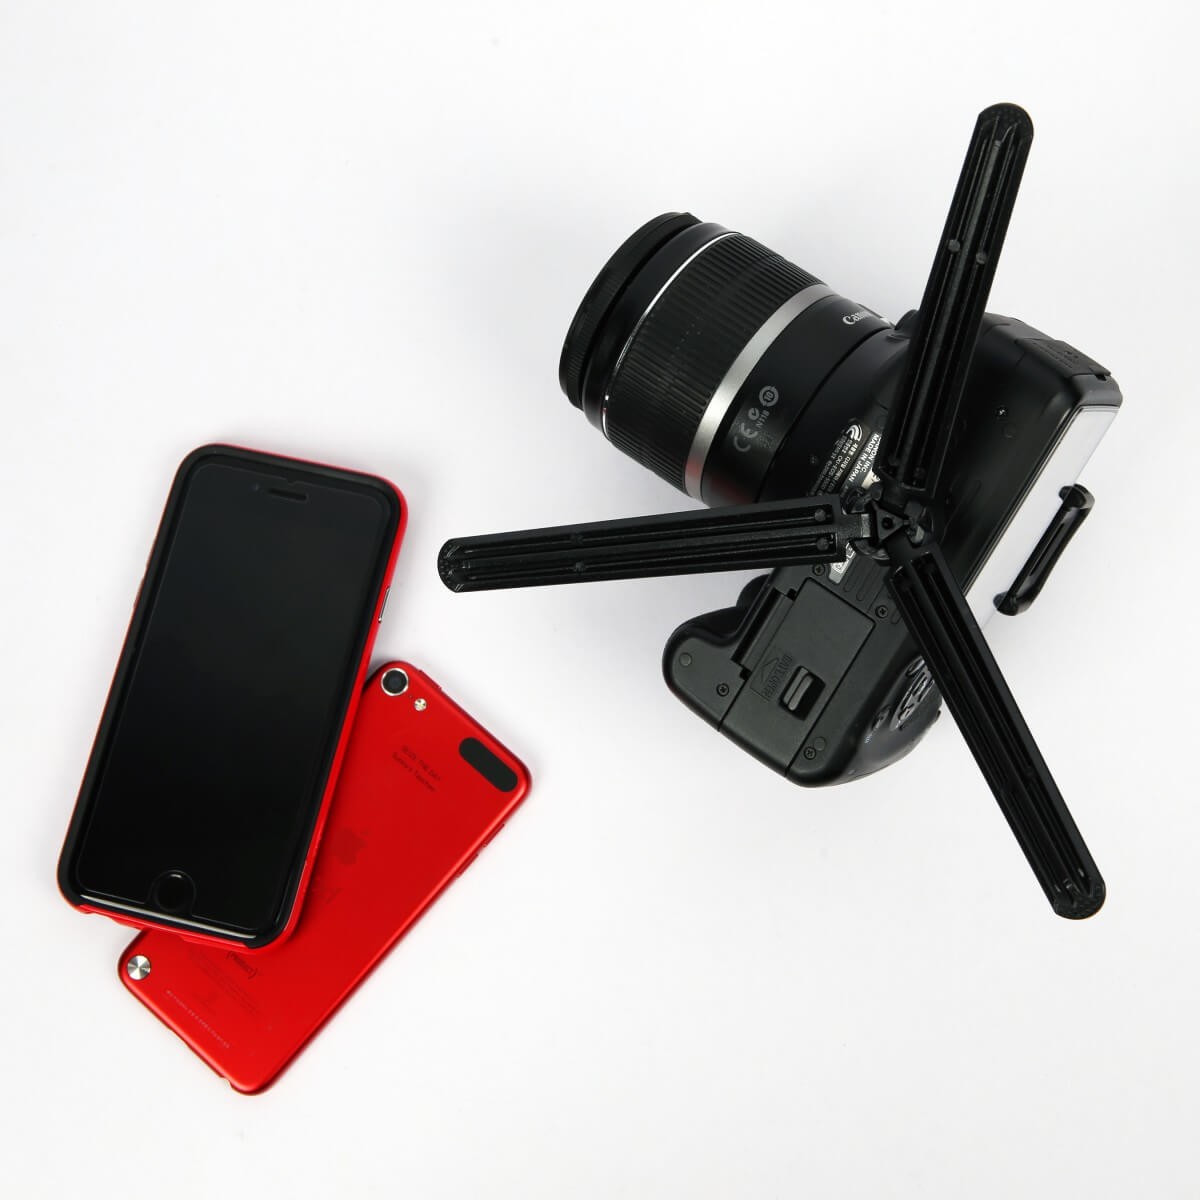 DiCAPac Action DP-1T Universal Stativ für Selfie Stick und Digitalkameras - Produktbild